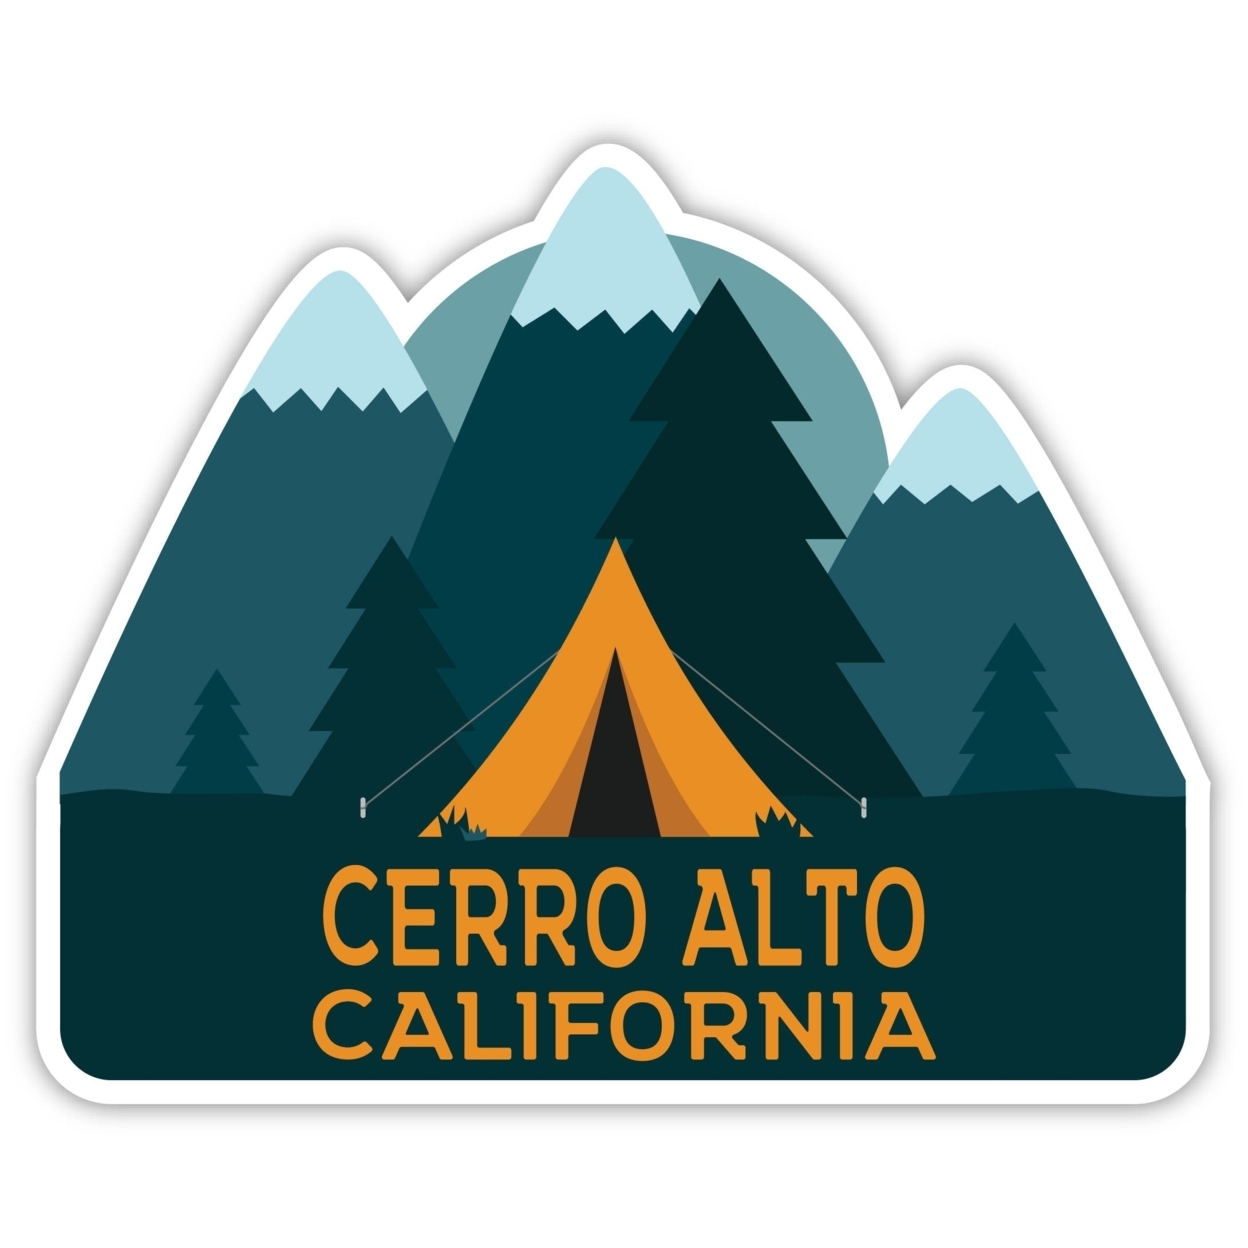 Cerro Alto California Souvenir Decorative Stickers (Choose Theme And Size) - Single Unit, 2-Inch, Tent